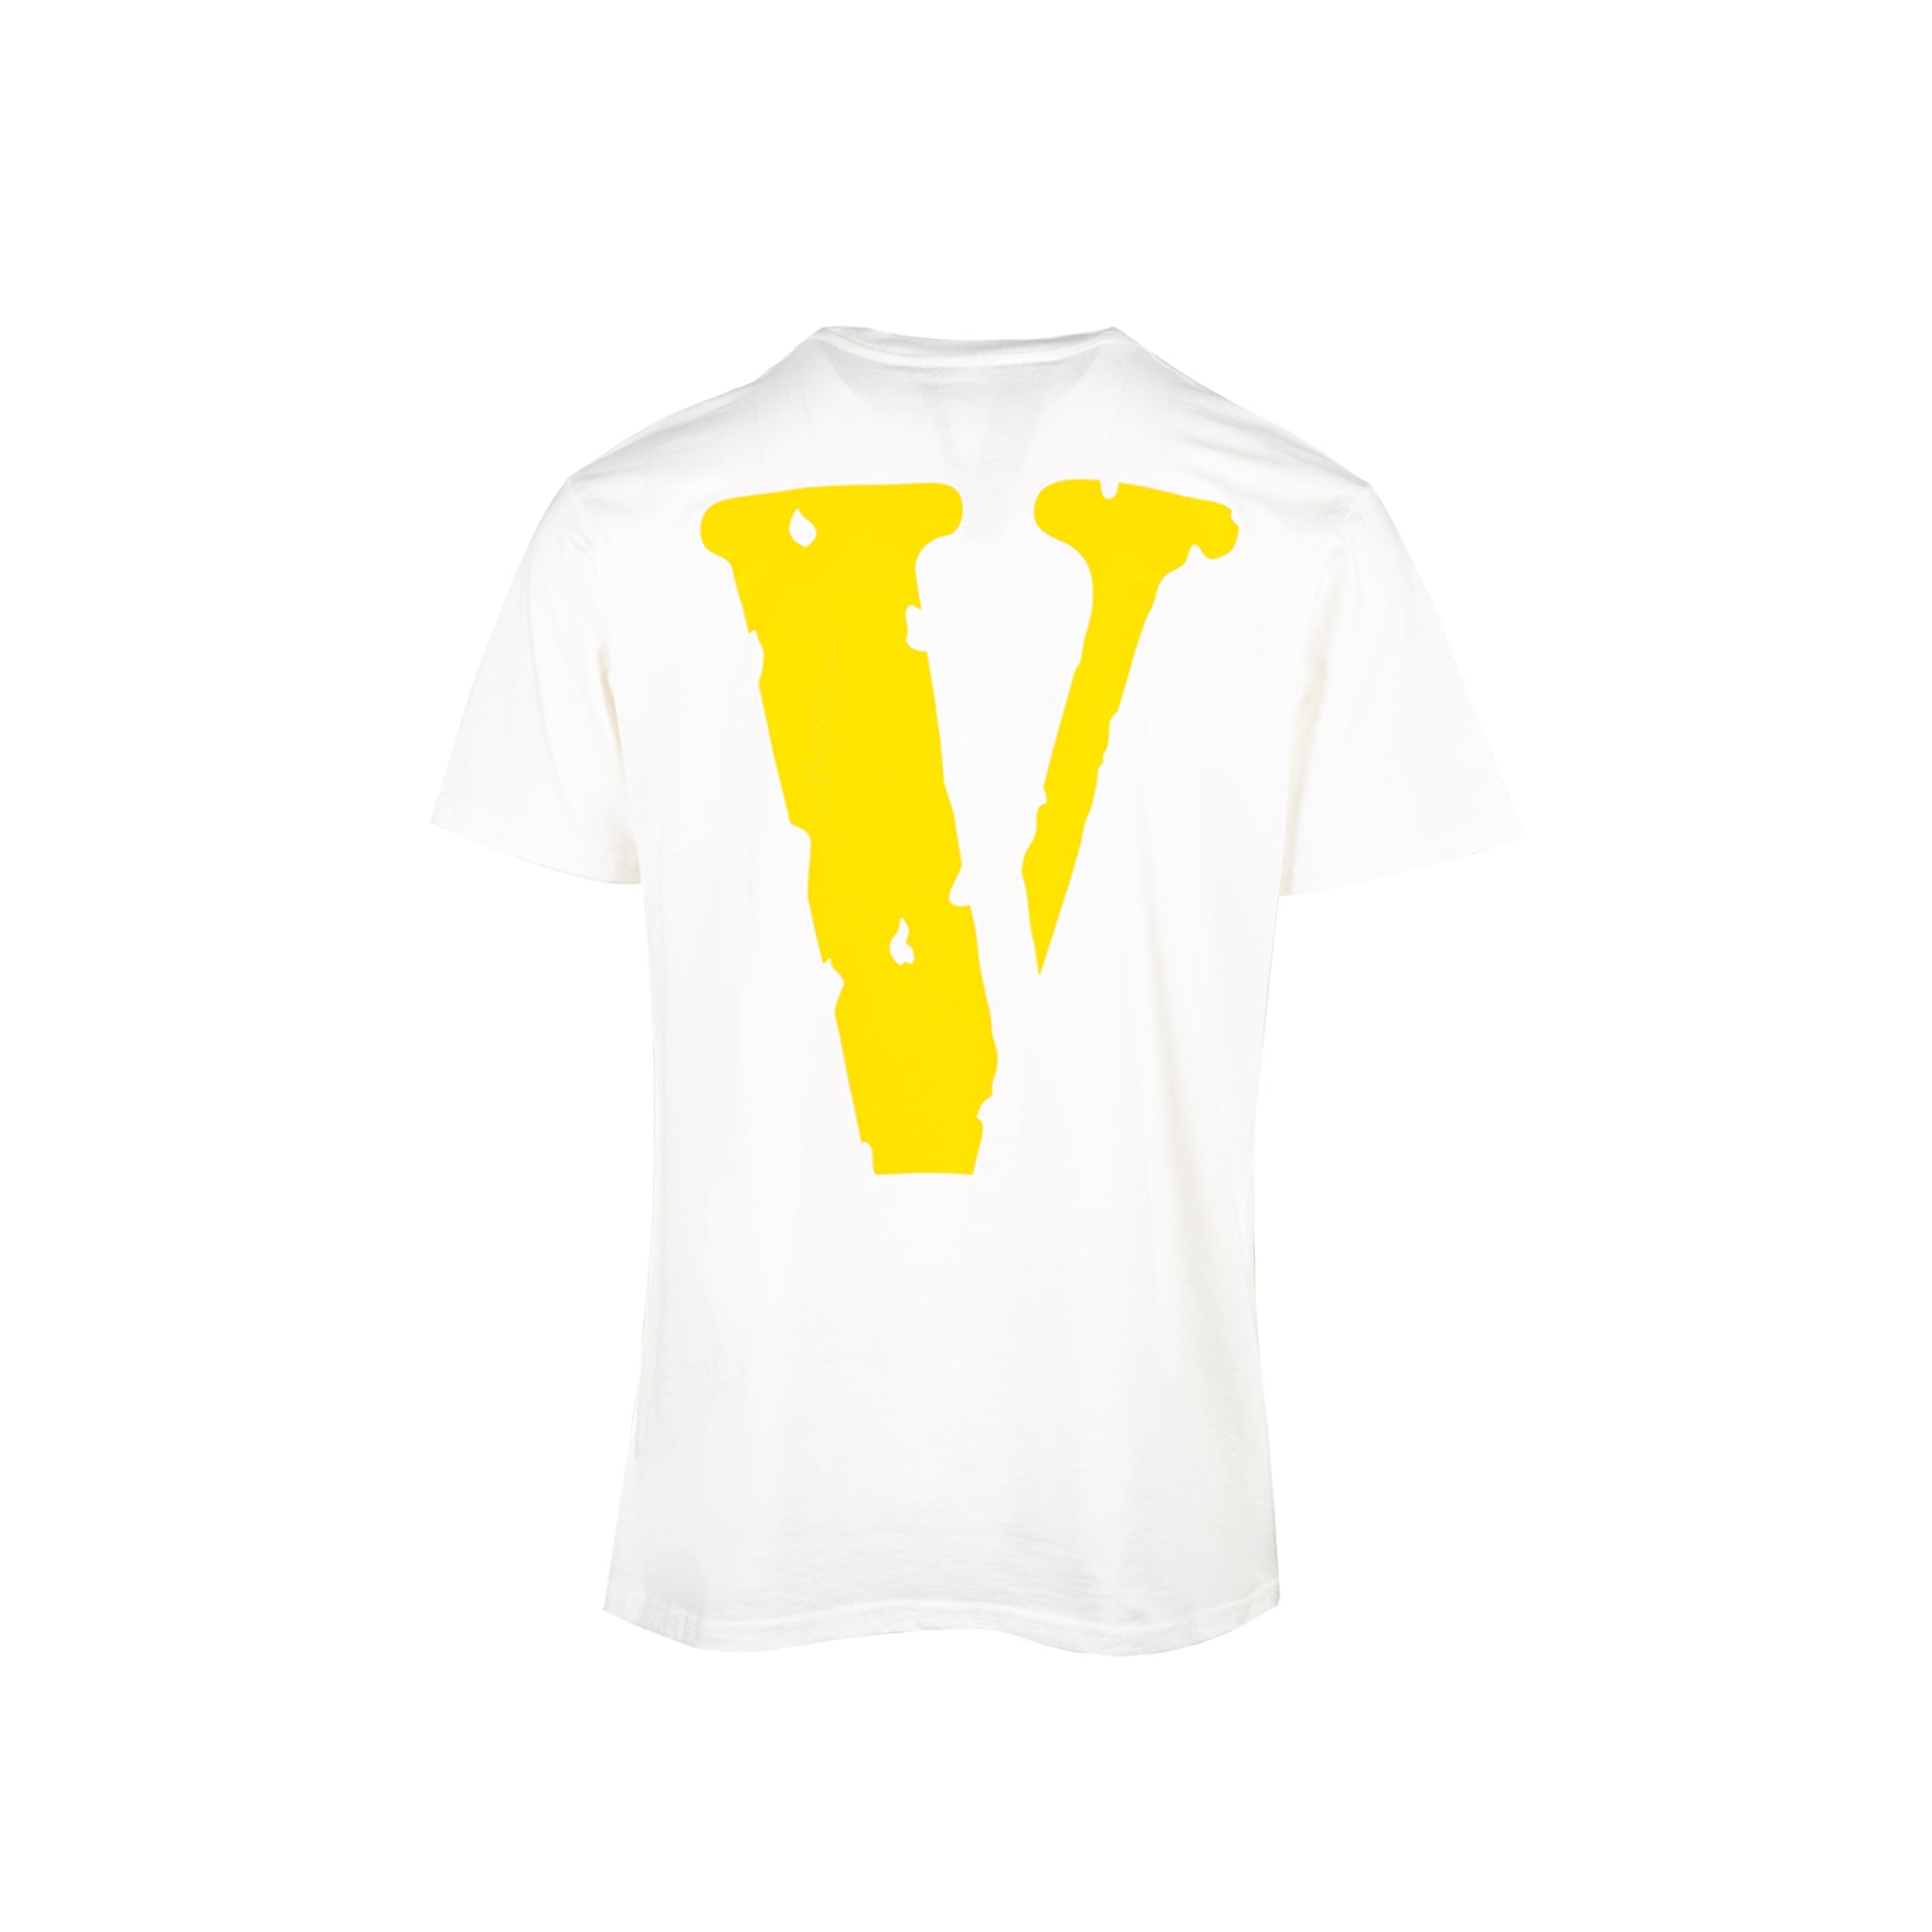 Vlone Staple Cotton White/ Yellow T-Shirt